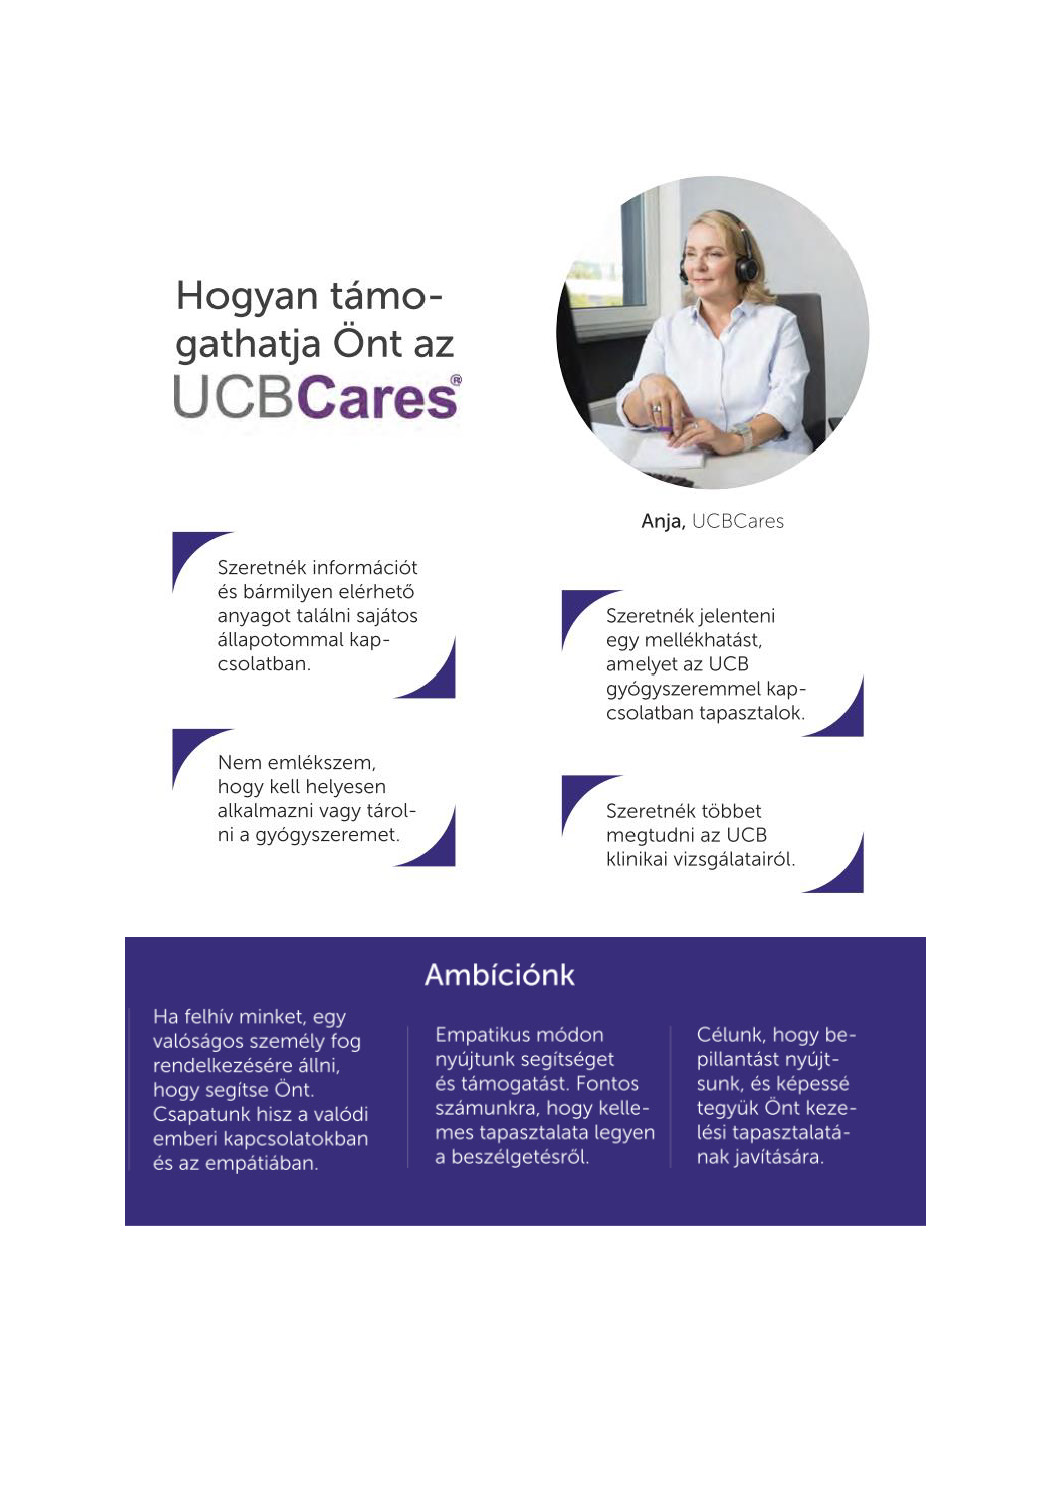 Információ a UCBCares szolgáltatásról